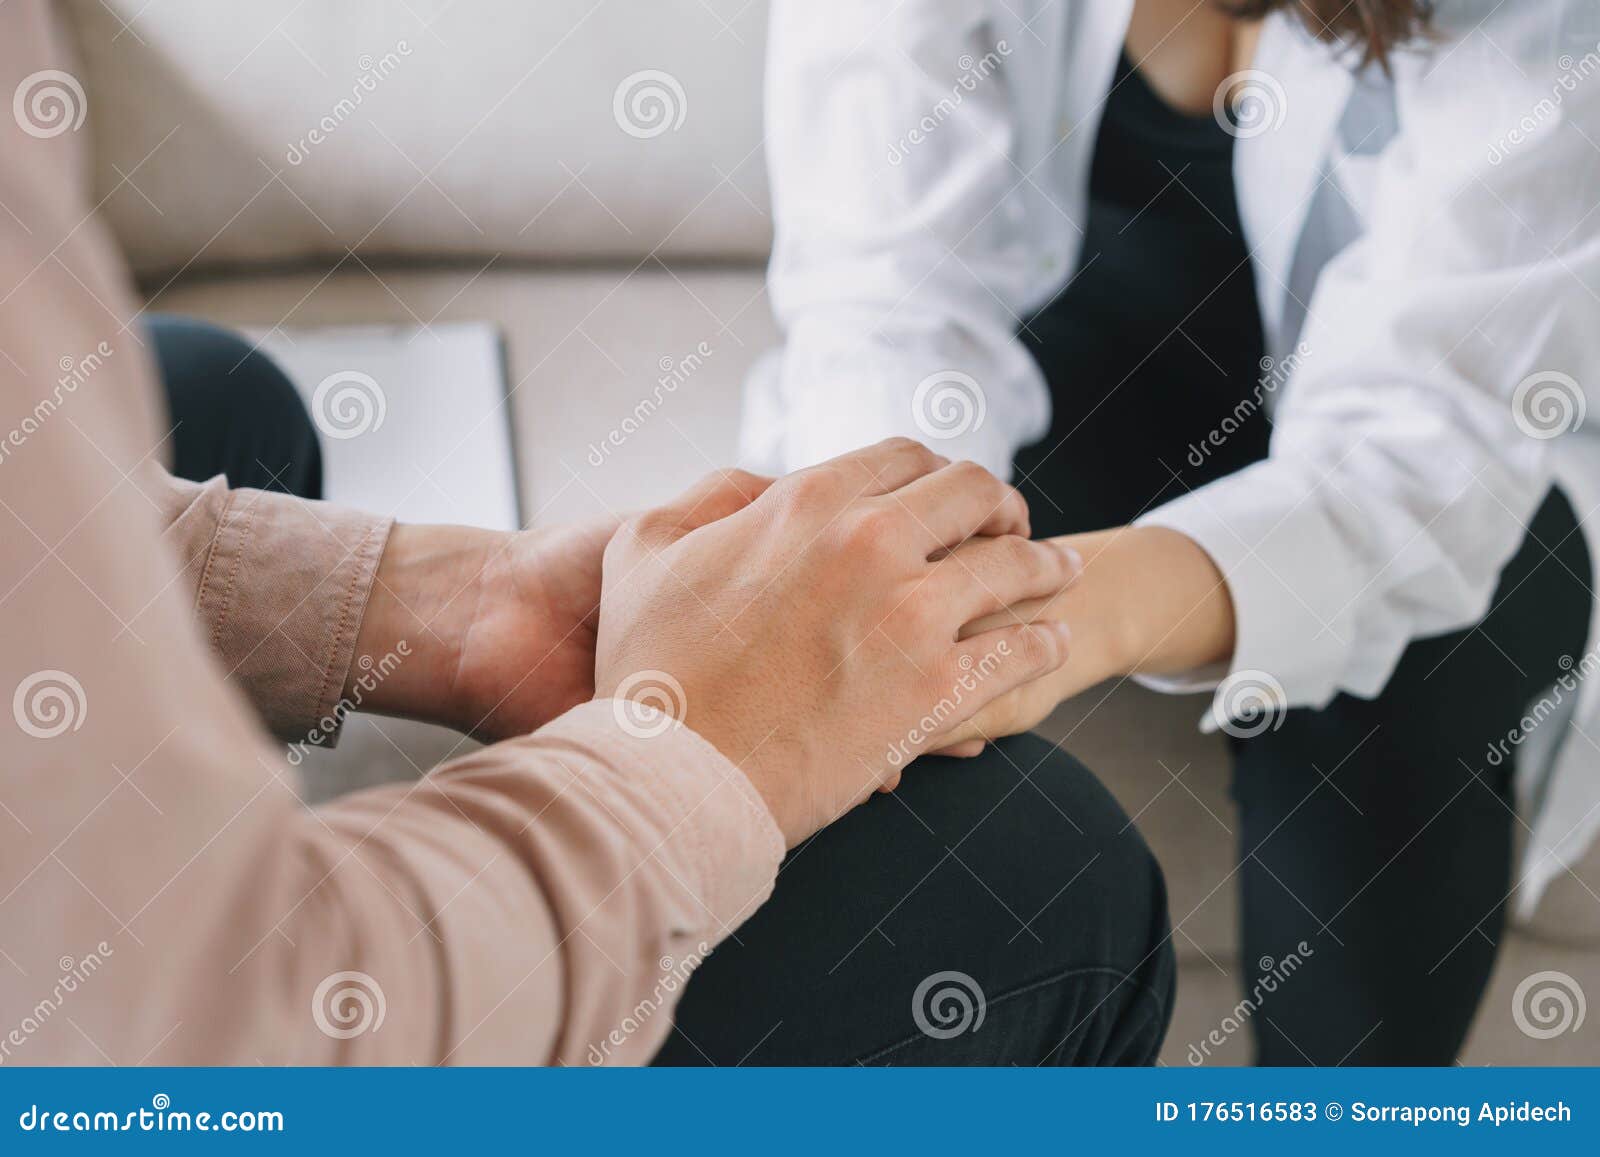 精神科医生手紧握病人手掌的特写心理男性抚慰并握着女性手库存图片 图片包括有人们 人力